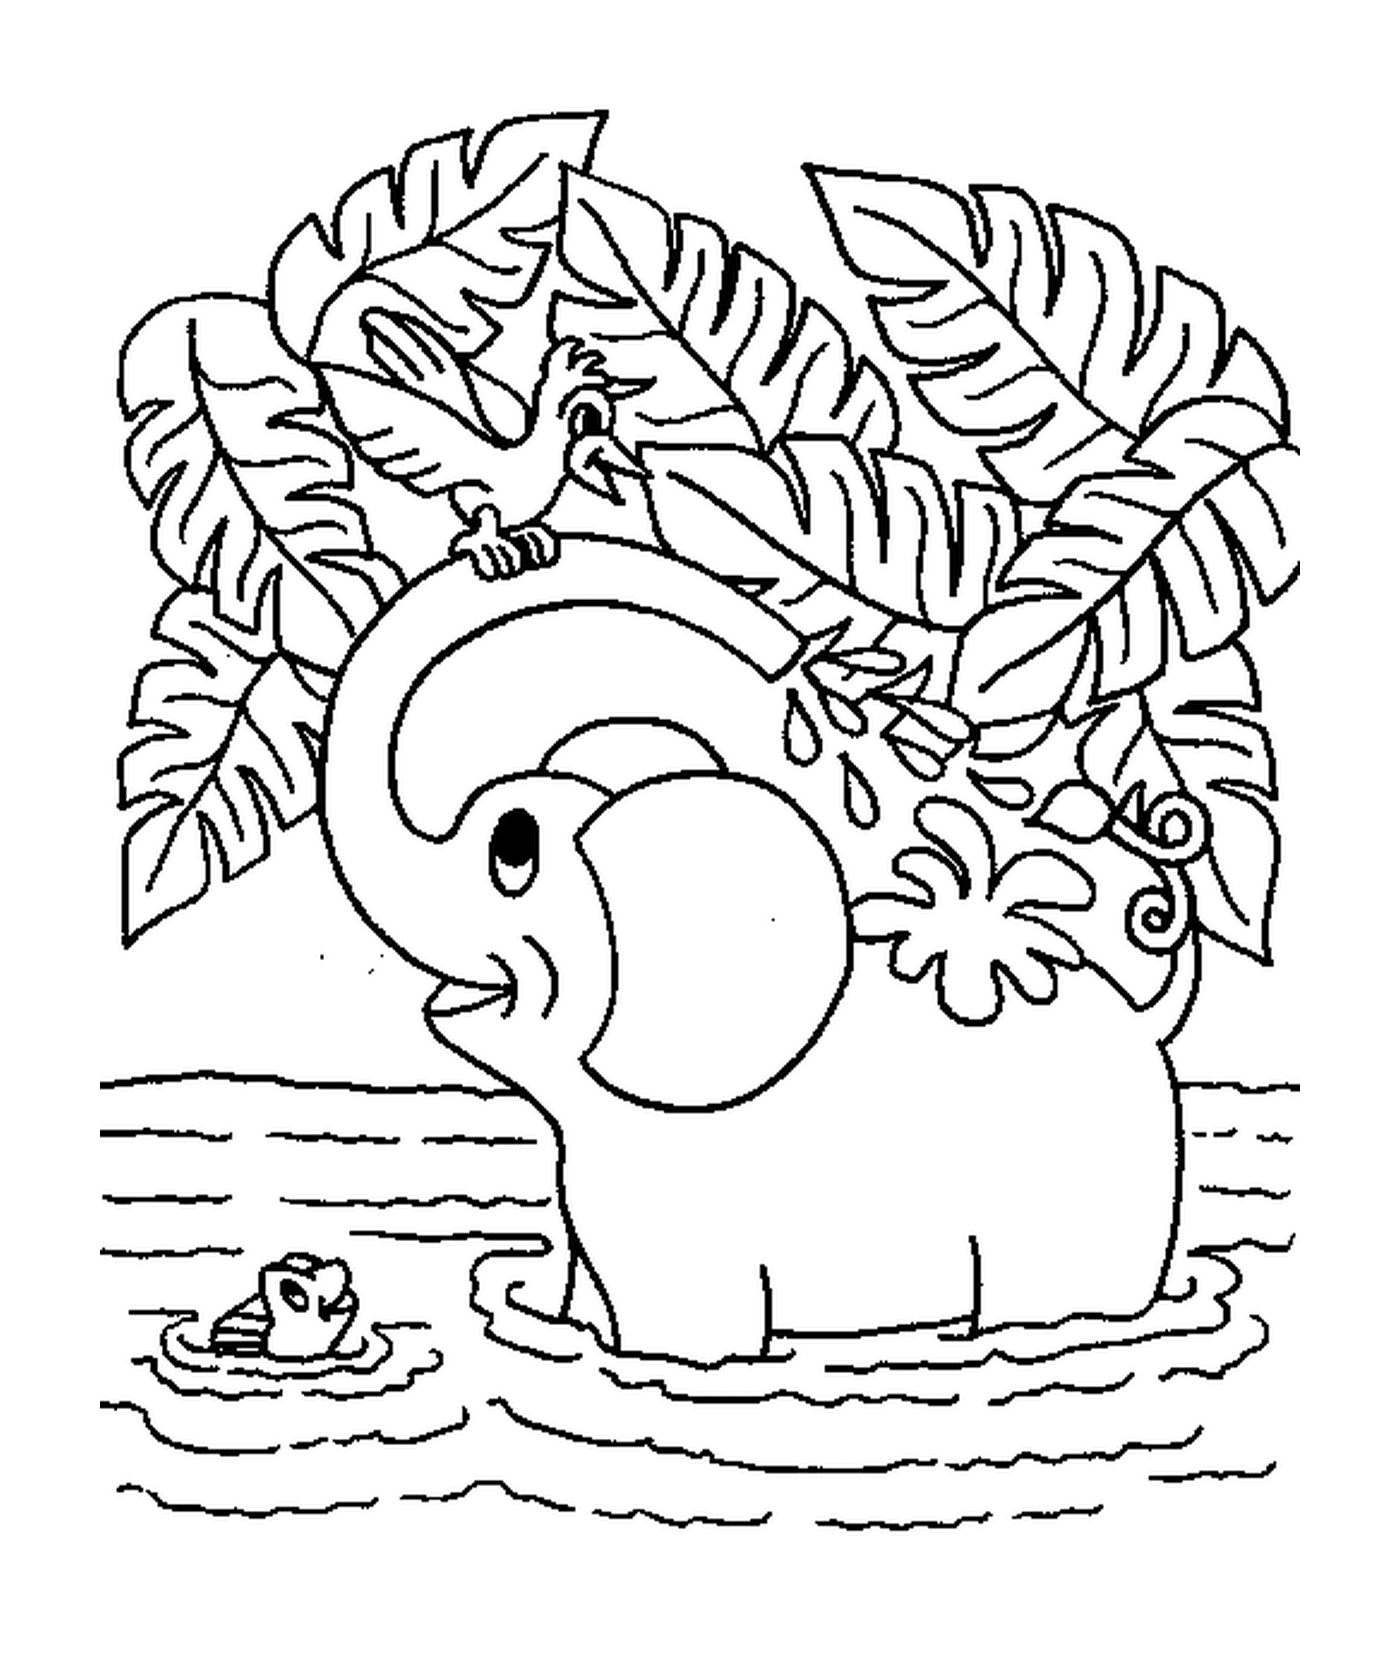  Слон мыл в реке 